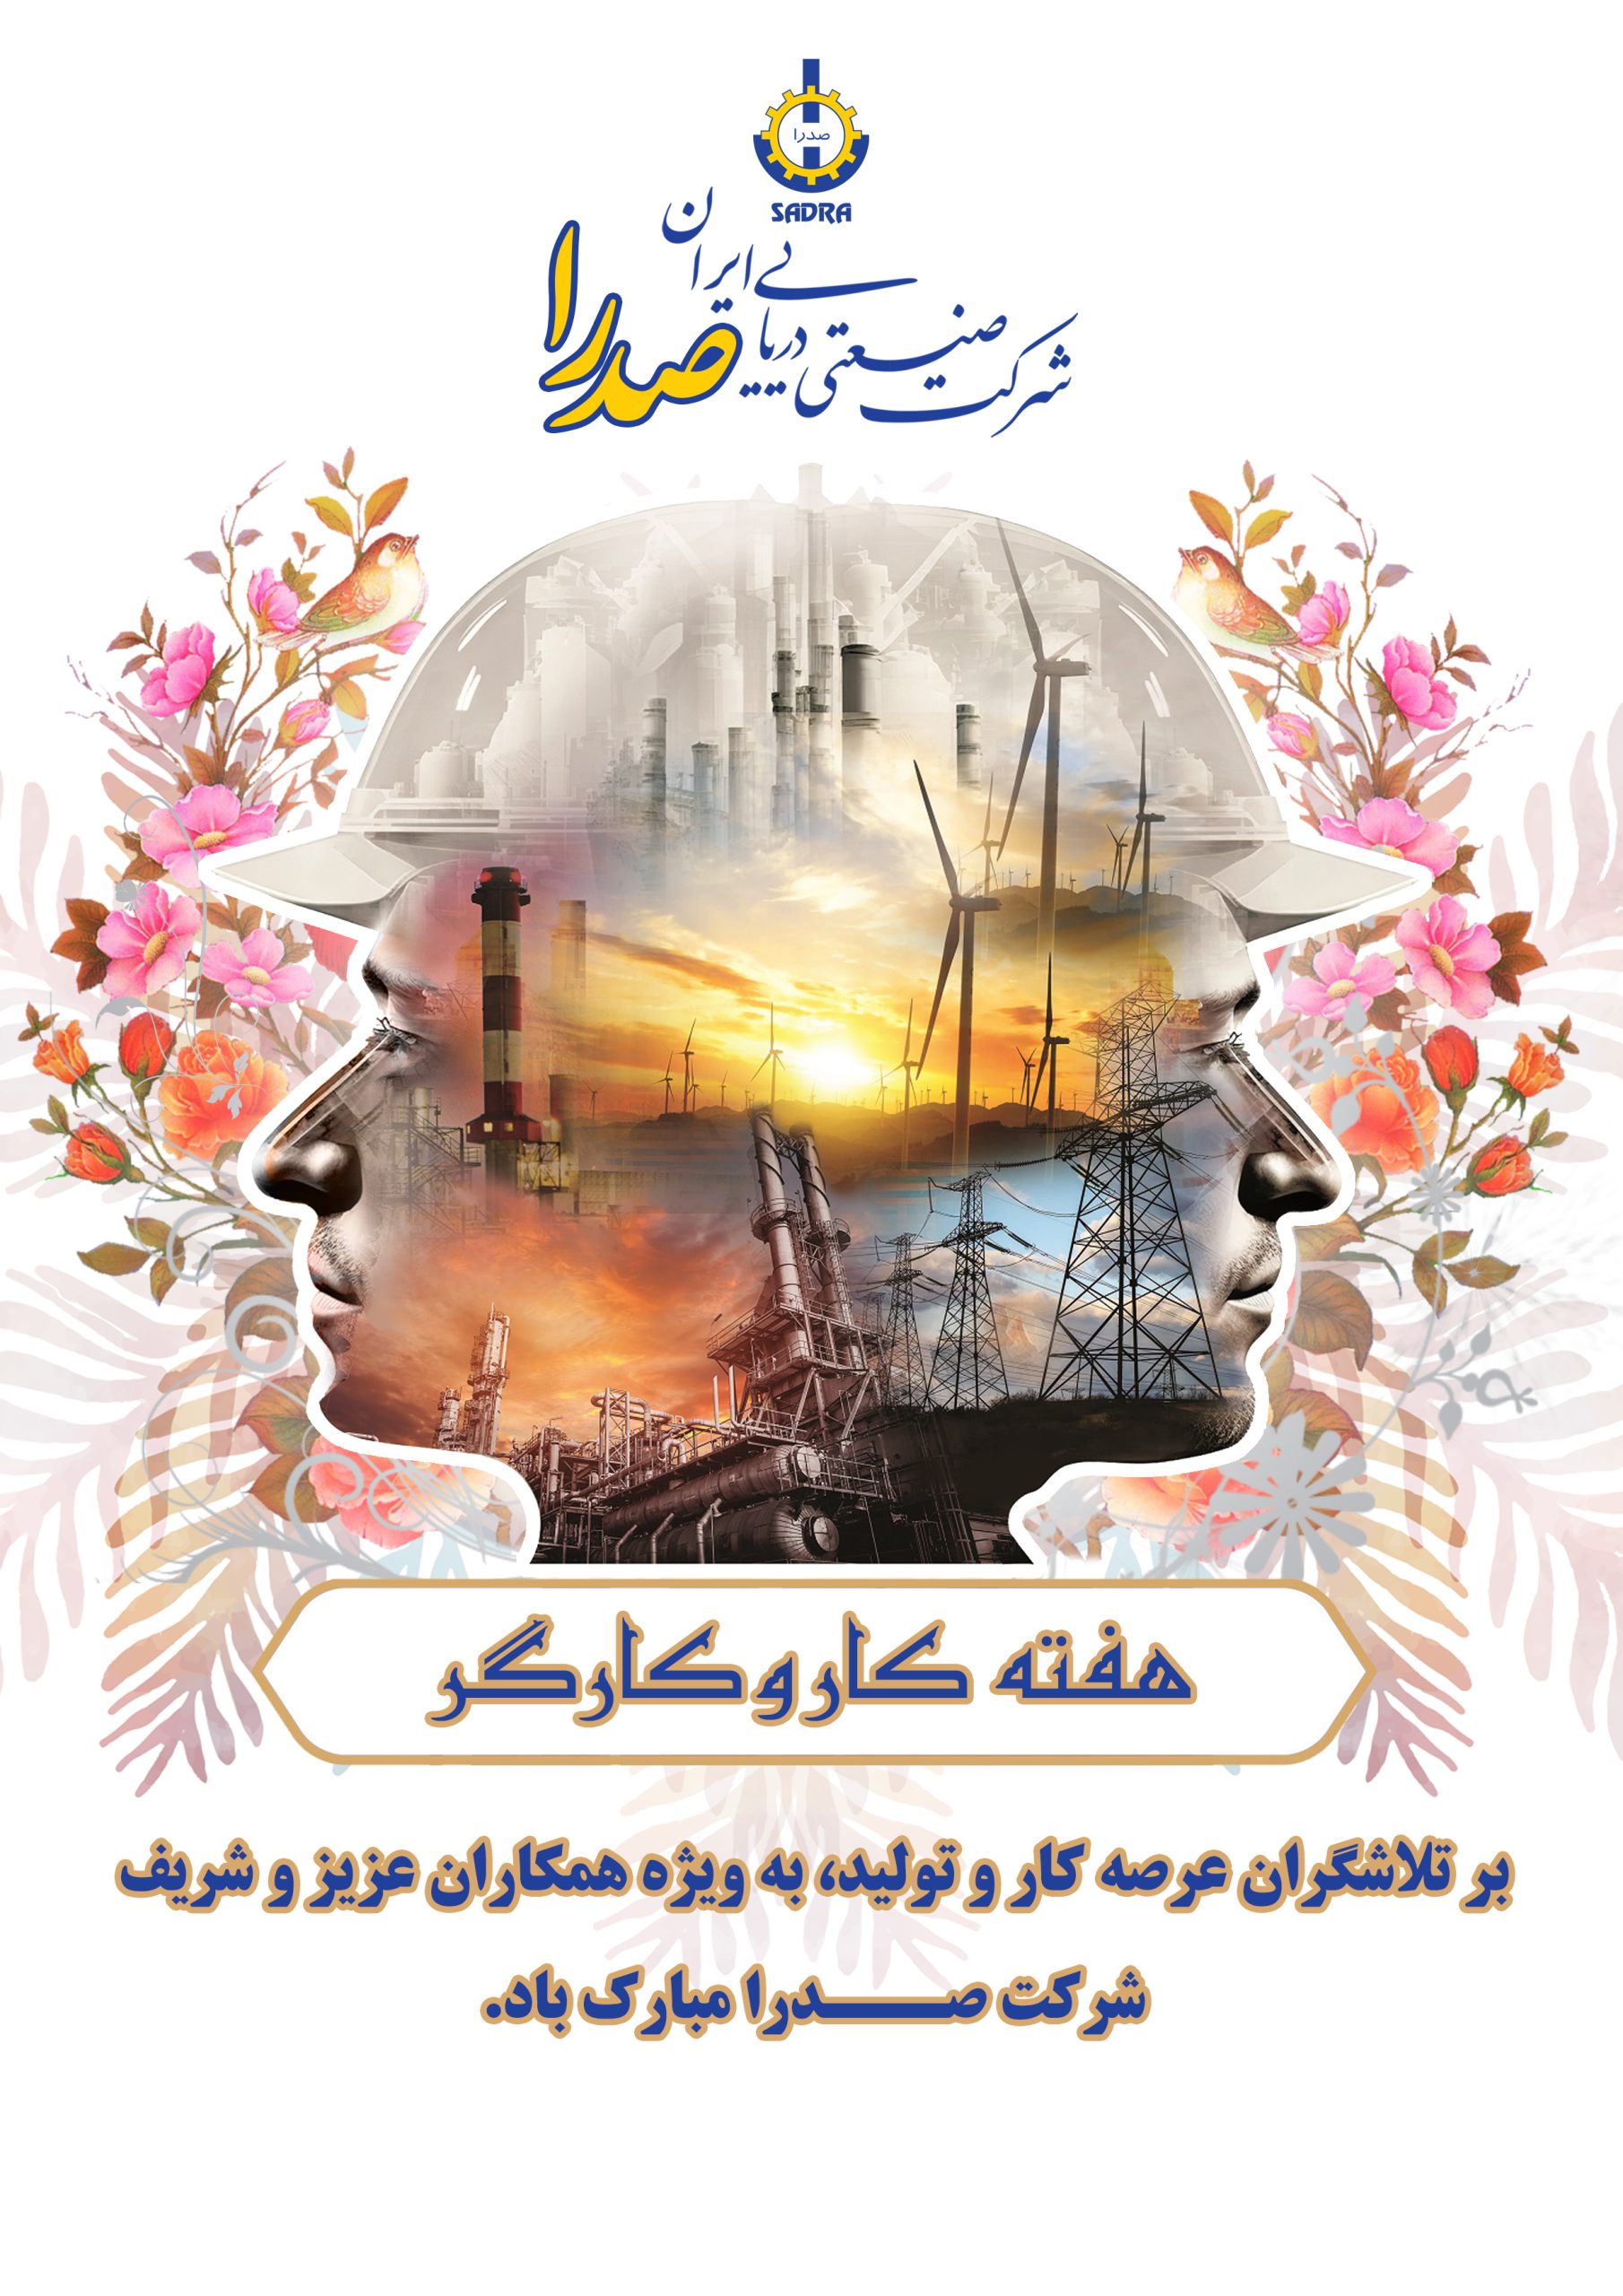 پیام تبریک مدیر عامل شرکت صدرا به مناسبت روز جهانی کارگر – شركت صنعتی دریایی ایران